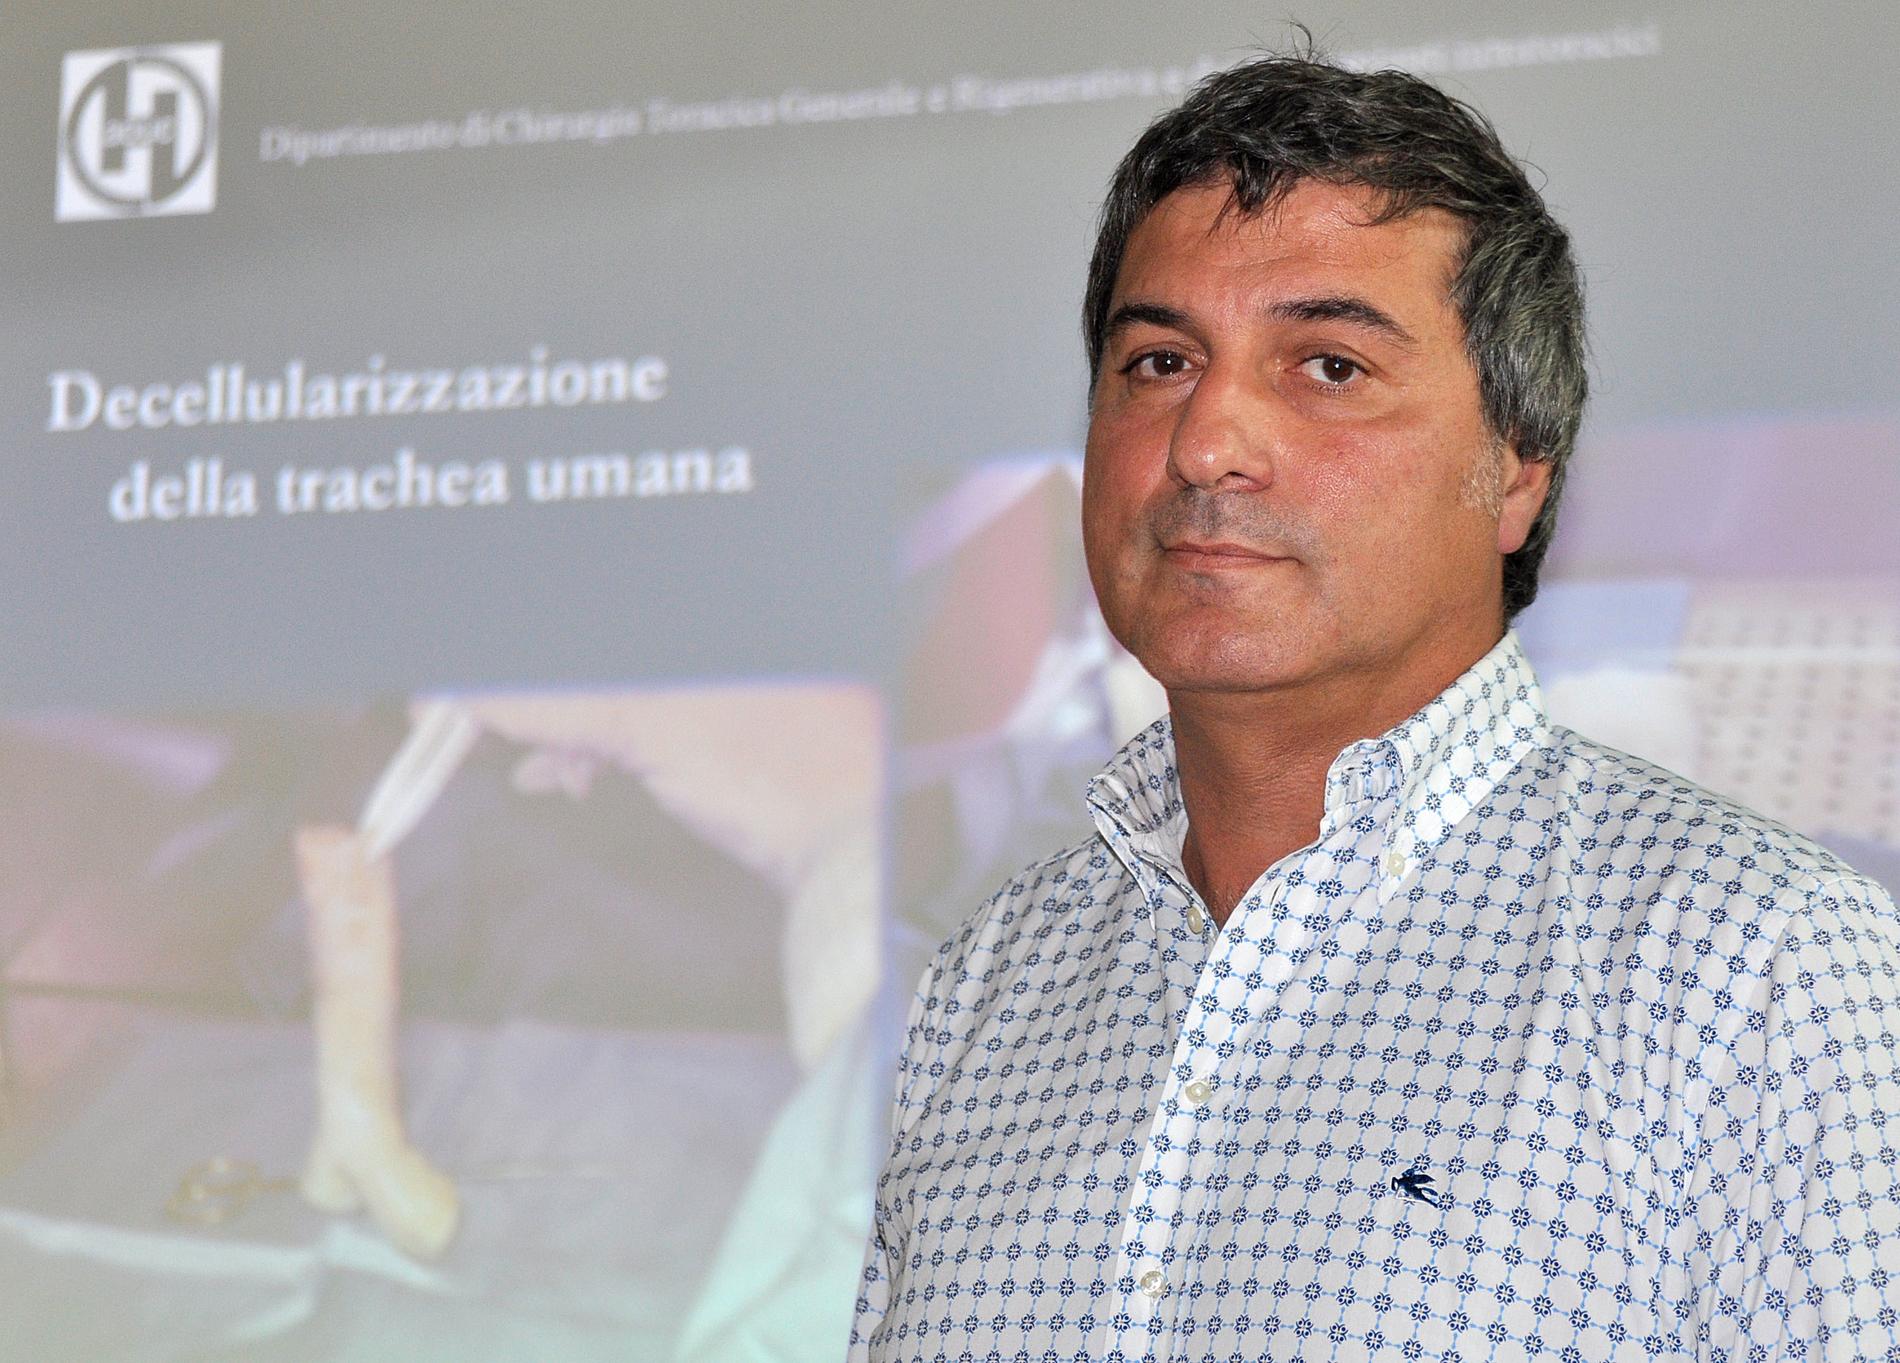 Paolo Macchiarini 2010 – samma år som han anställdes som gästprofessor vid Karolinska institutet och överläkare vid Karolinska universitetssjukhuset. Arkivbild.